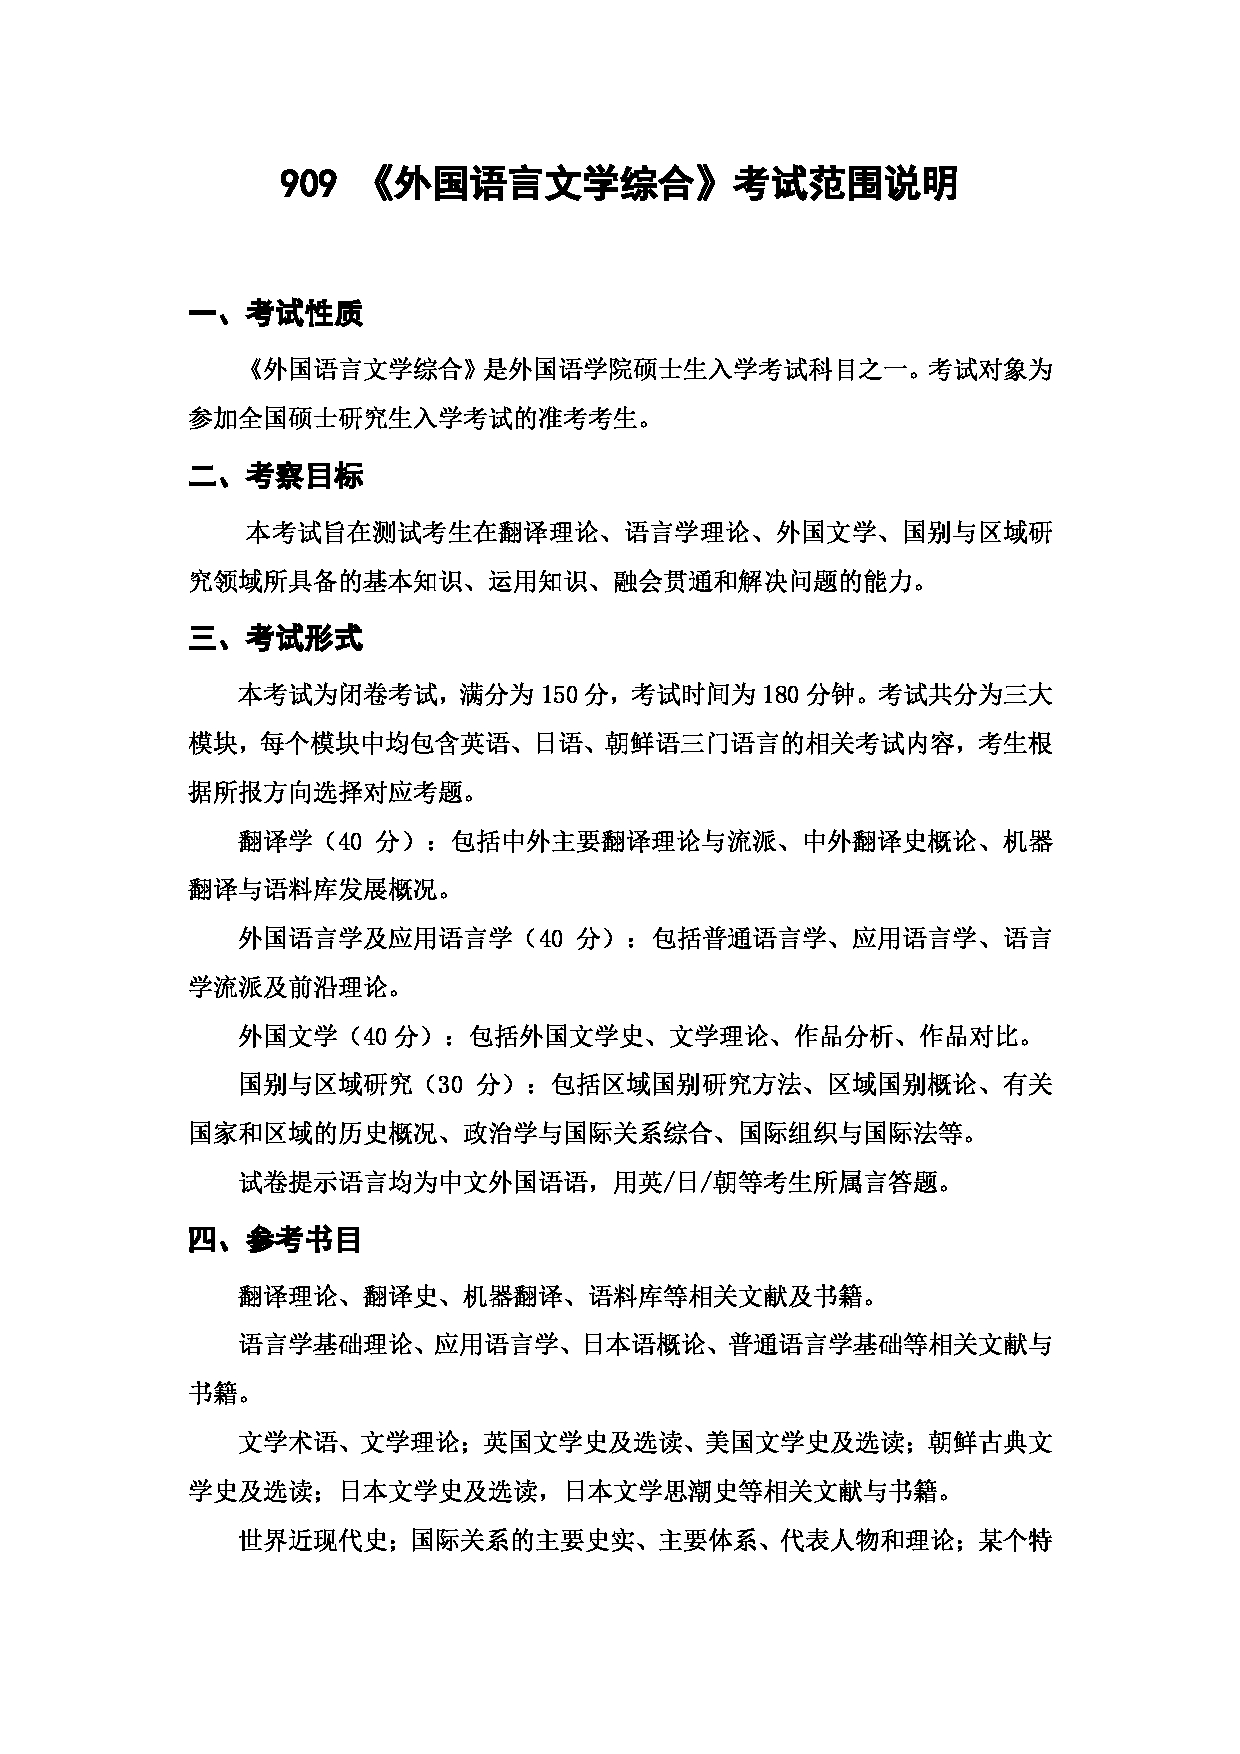 上海海洋大学2023年考研自命题科目 909《外国语言文学综合》 考试范围第1页